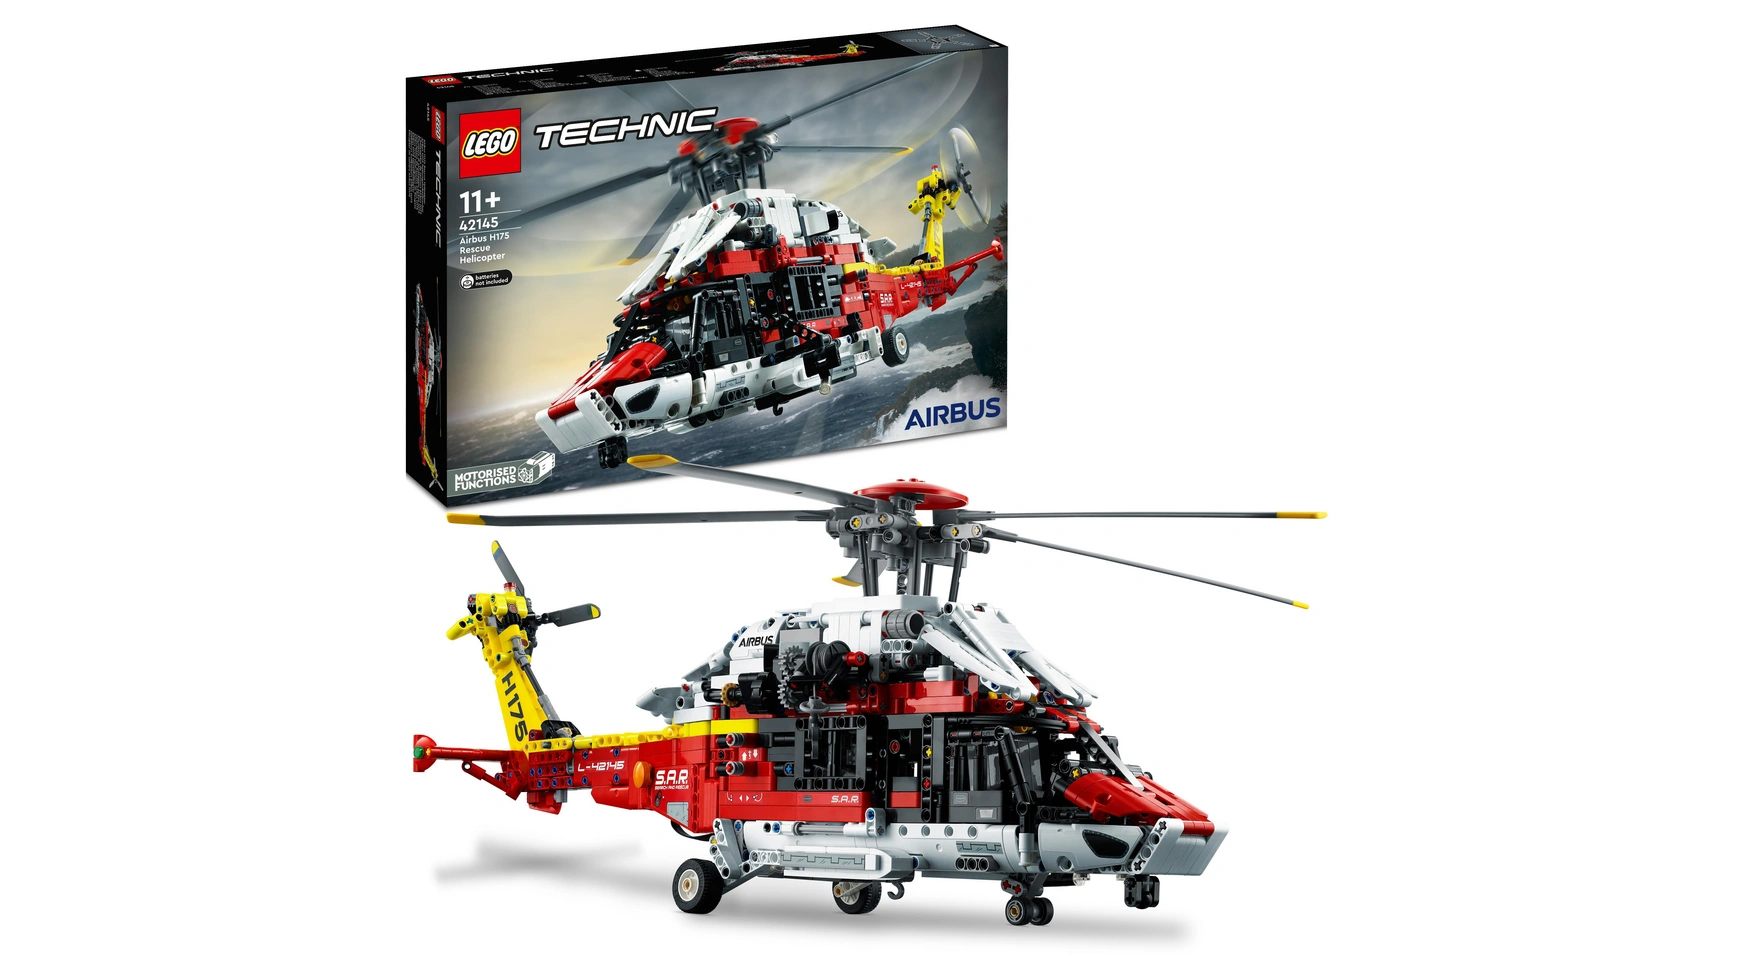 Lego Technic Набор моделей спасательного вертолета Airbus H175 конструктор спасательный вертолет airbus h175 2001 деталей